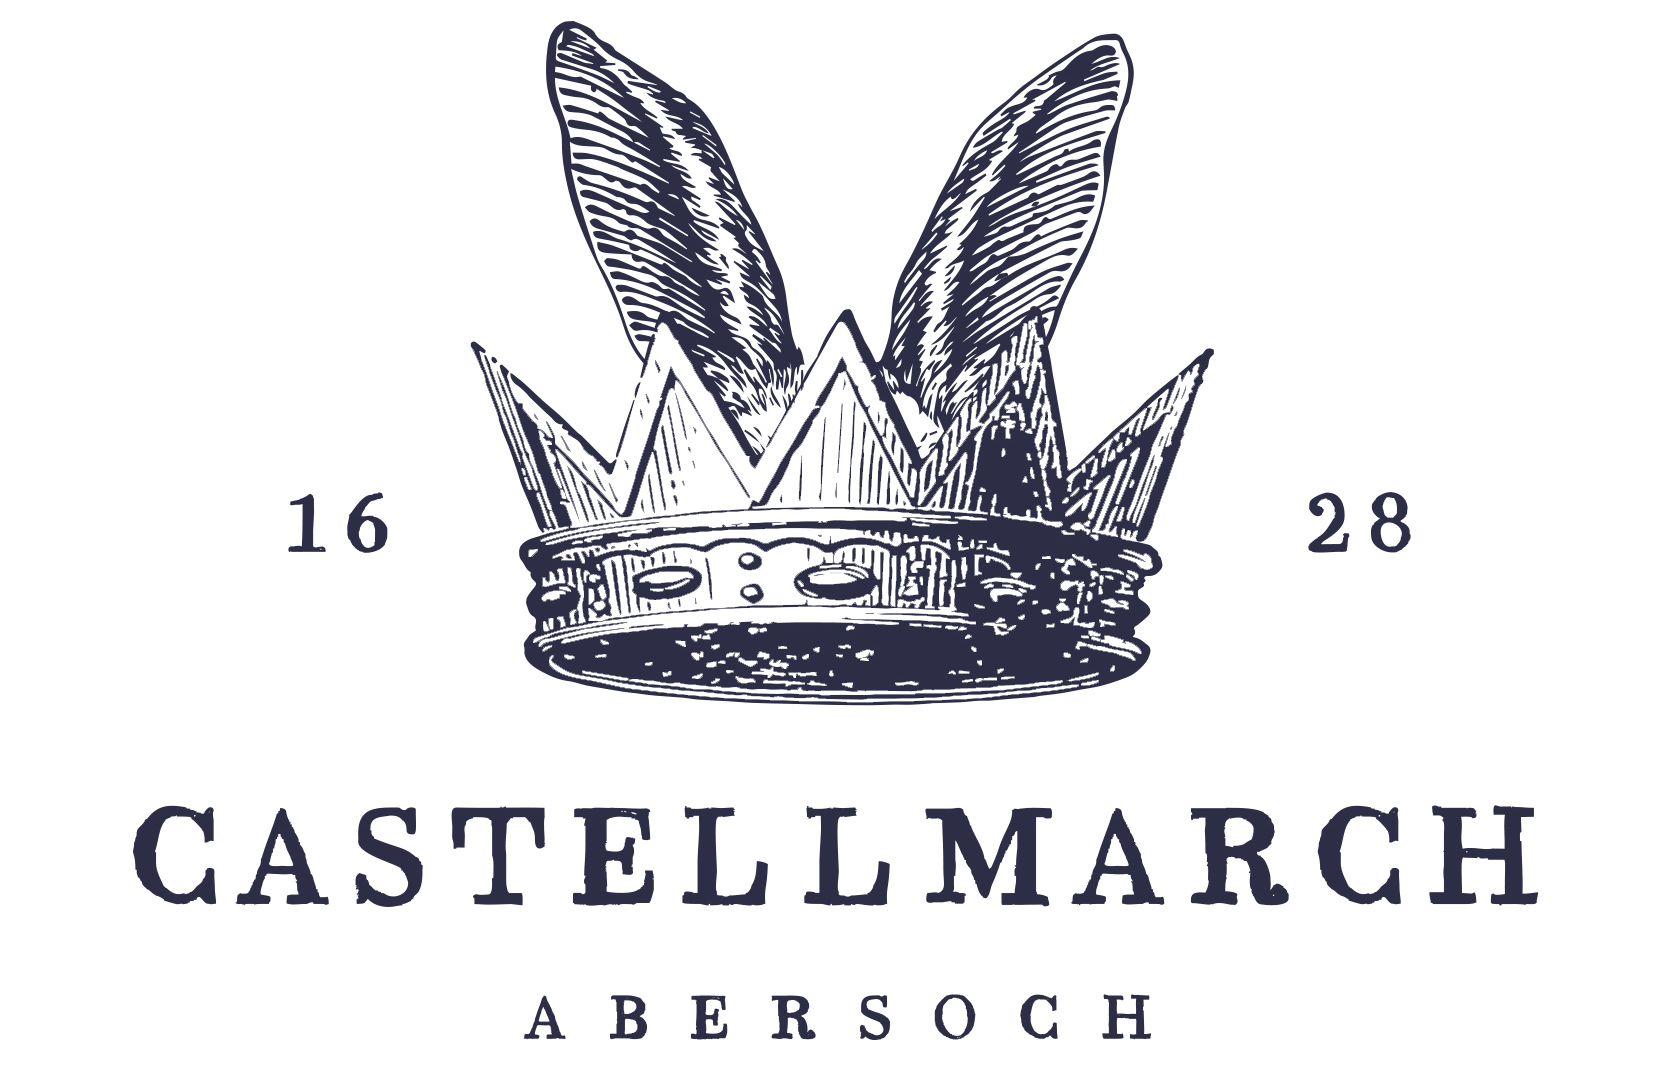 Crown with Castellmarch written underneath